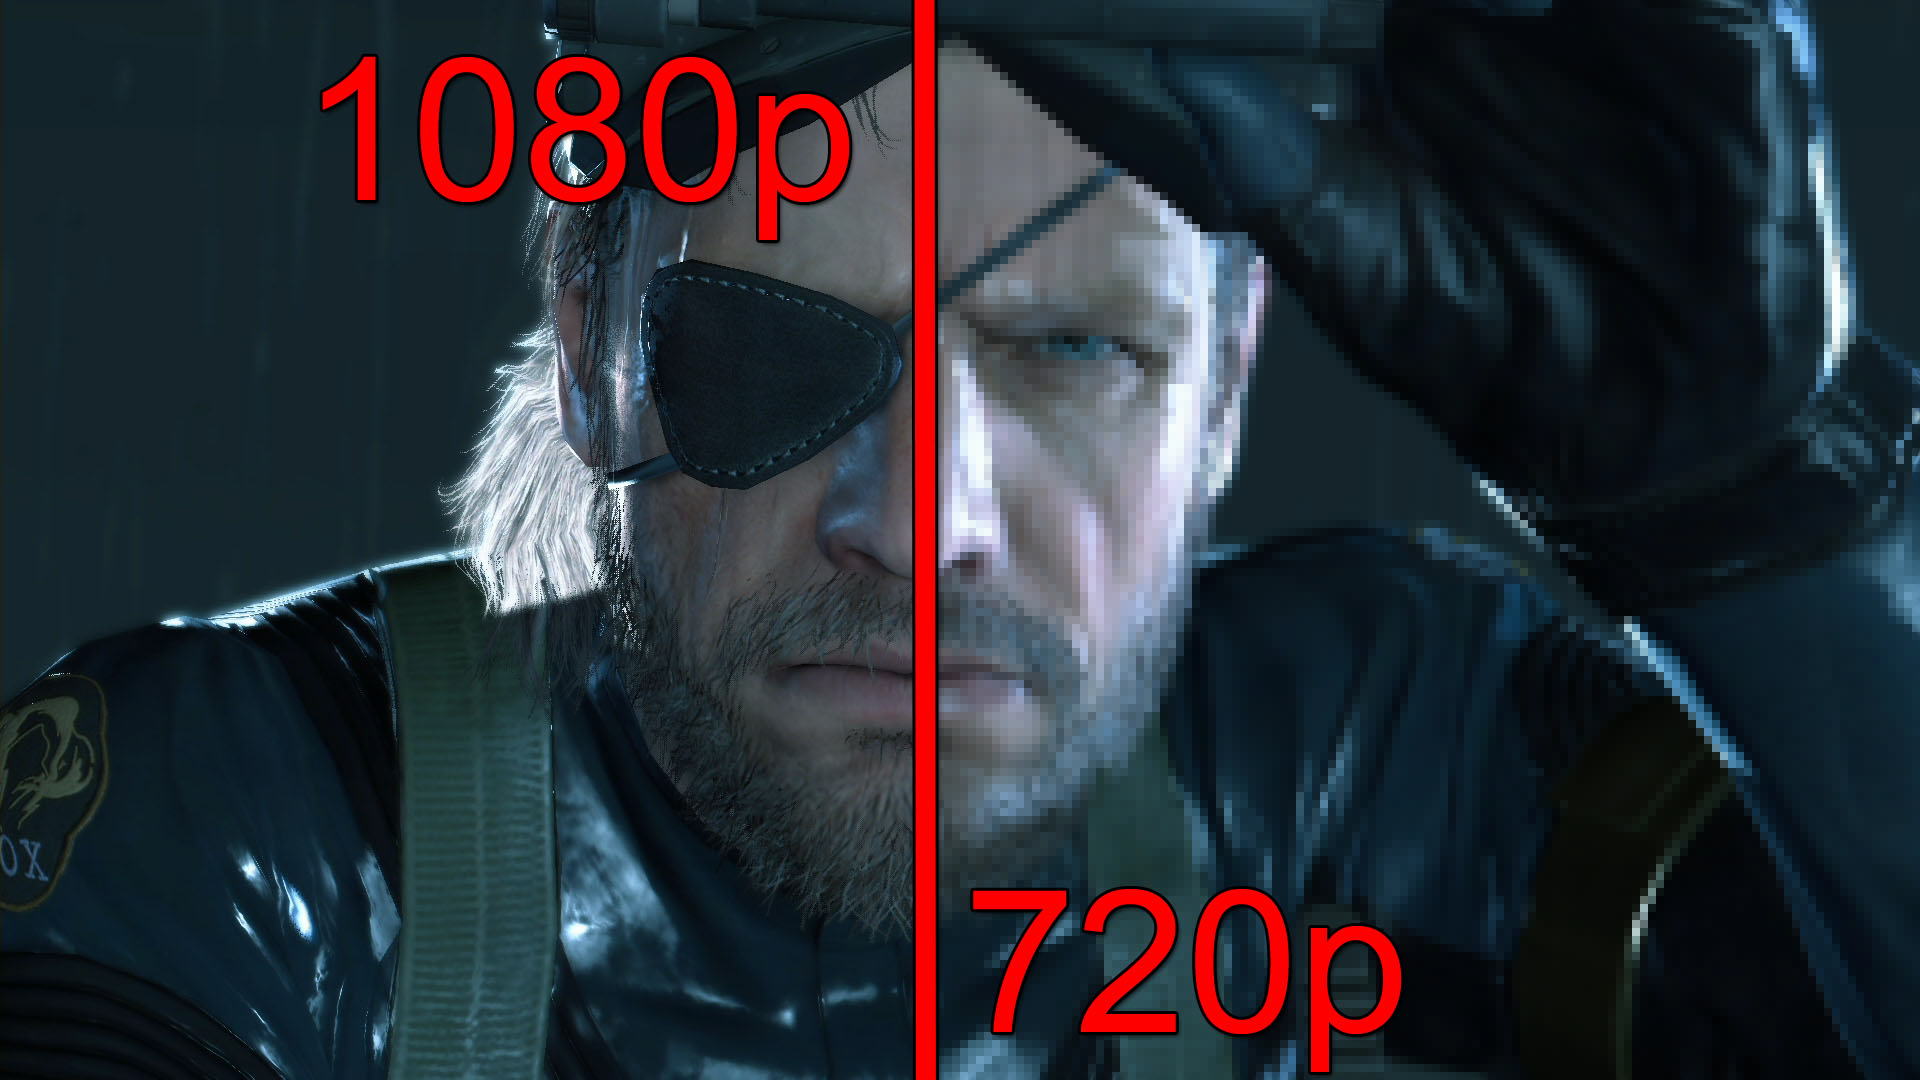 Este 720p mai bun decât camera 1080p?